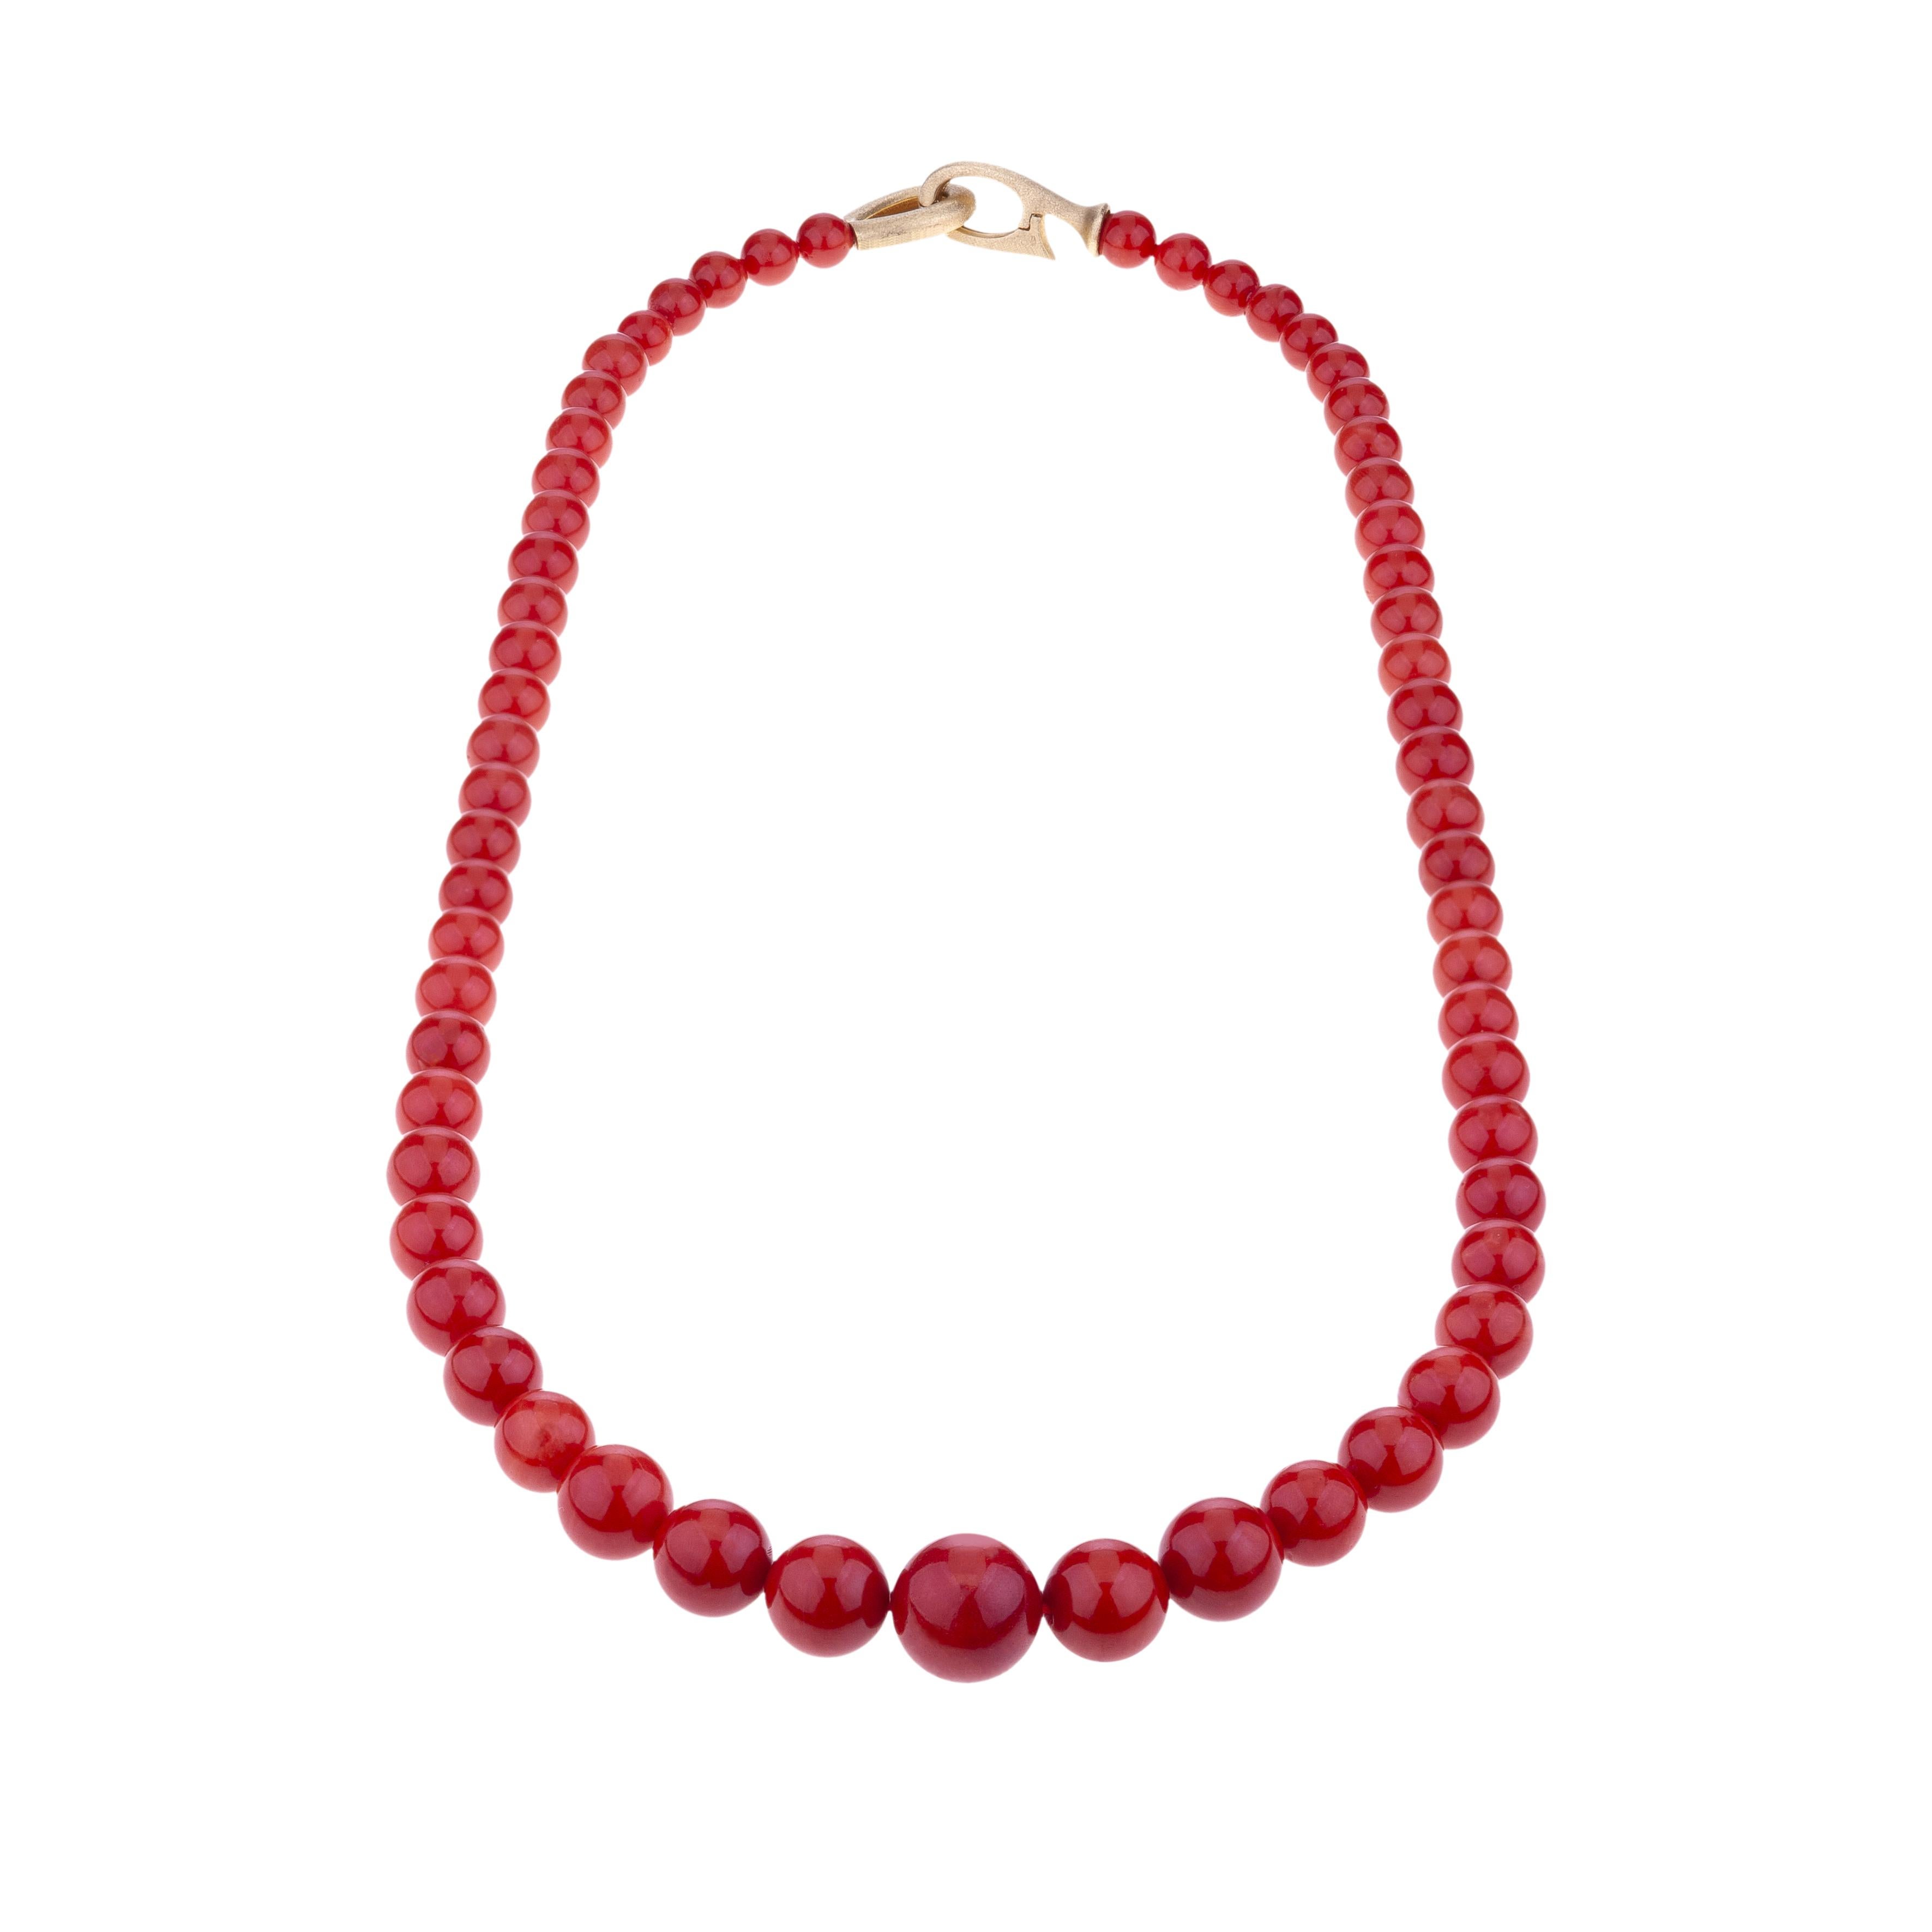 Sardische rote Koralle Perle lange Halskette 18kt Gold Verschluss.
Die Koralle stammt aus dem Mittelmeer, ihr intensives Rot ist in dieser Gegend definitiv selten.
Hochwertige Korallenperlen sind von 15,50 bis 7,3 mm abgestuft und das Gewicht der